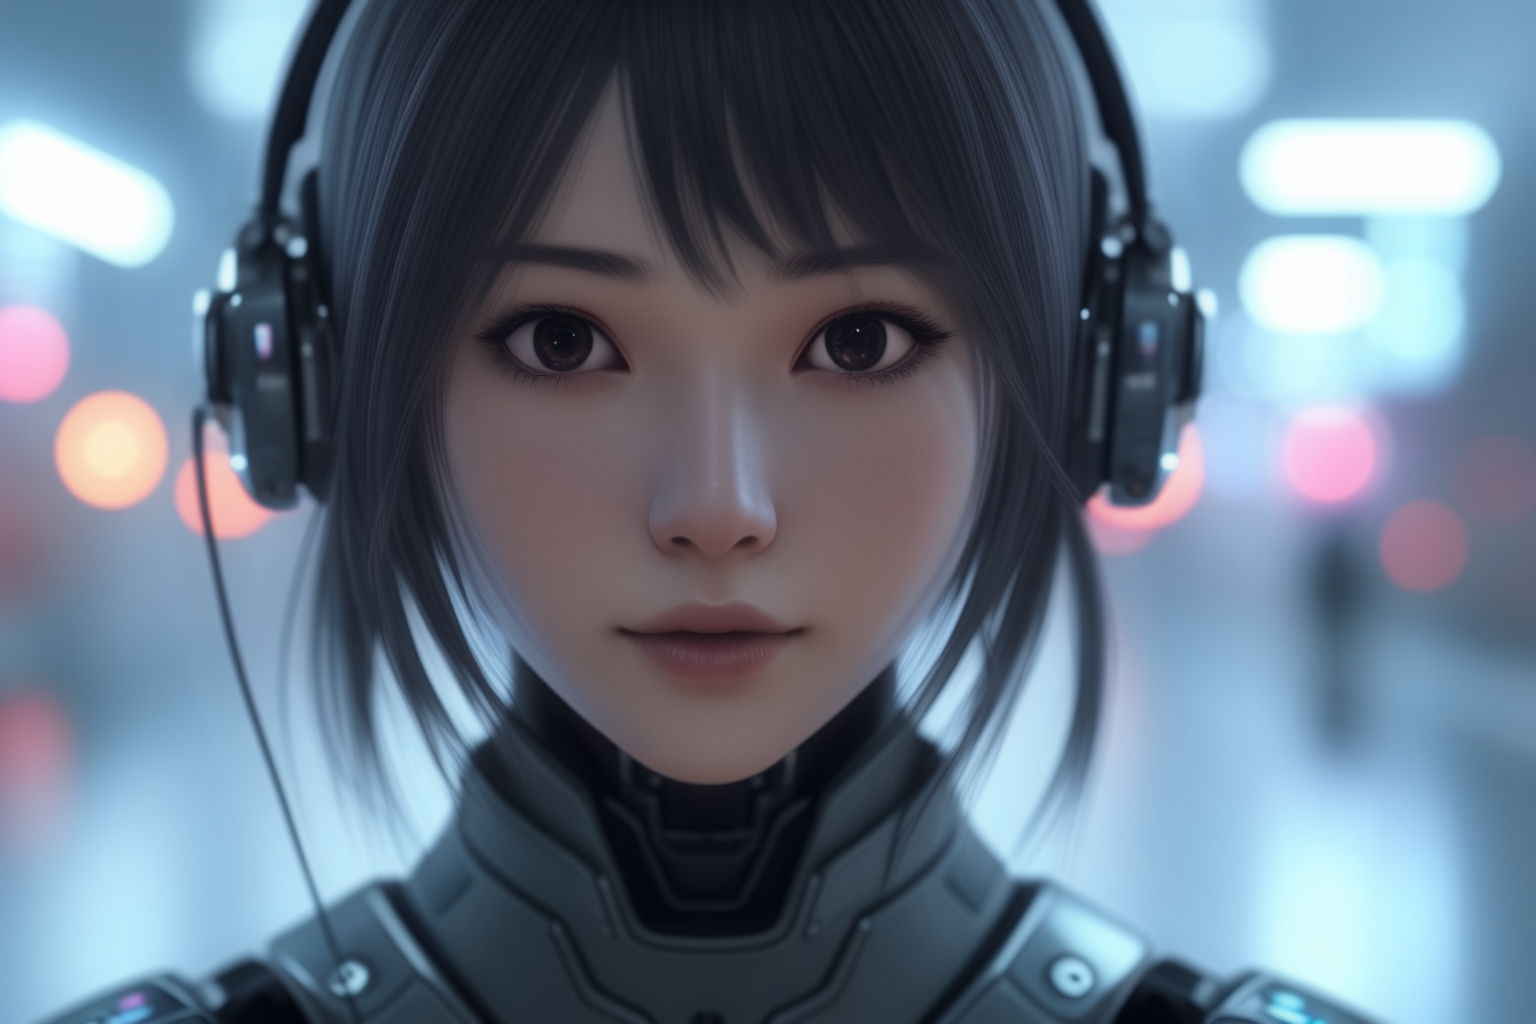 ИИ-персонажей назвали будущим внутриигрового общения